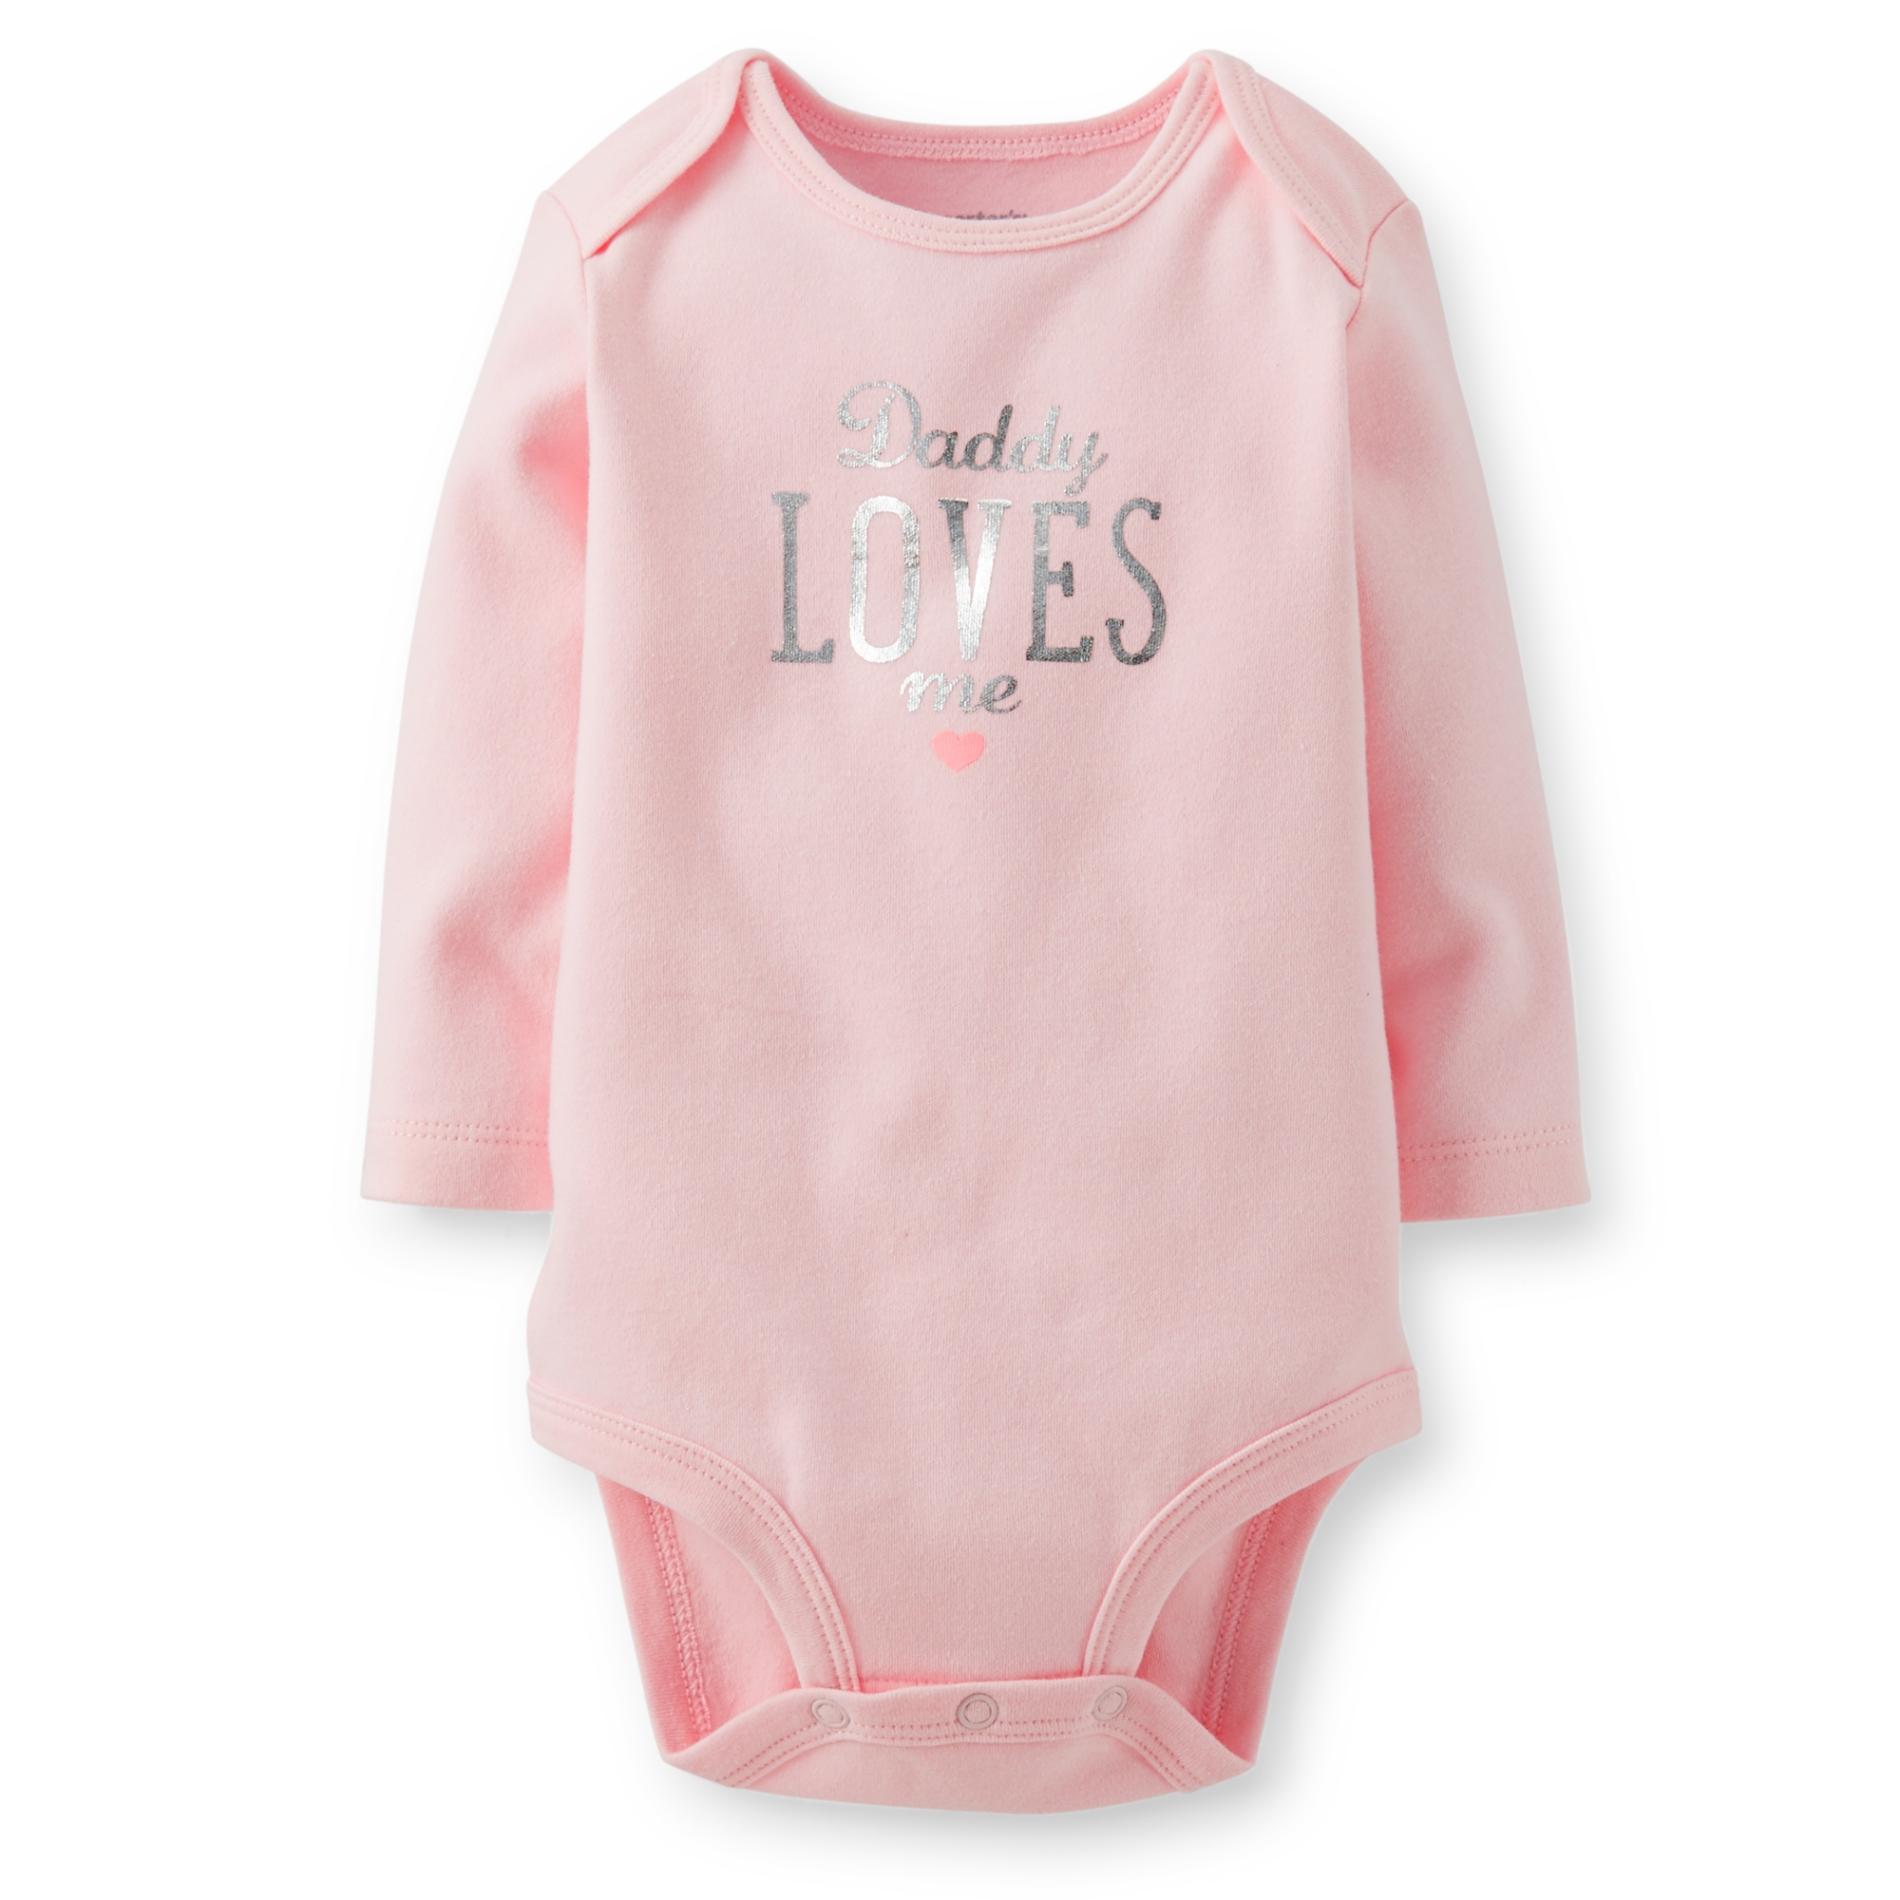 Carter's Newborn & Infant Girl's Long-Sleeve Bodysuit - Daddy Loves Me